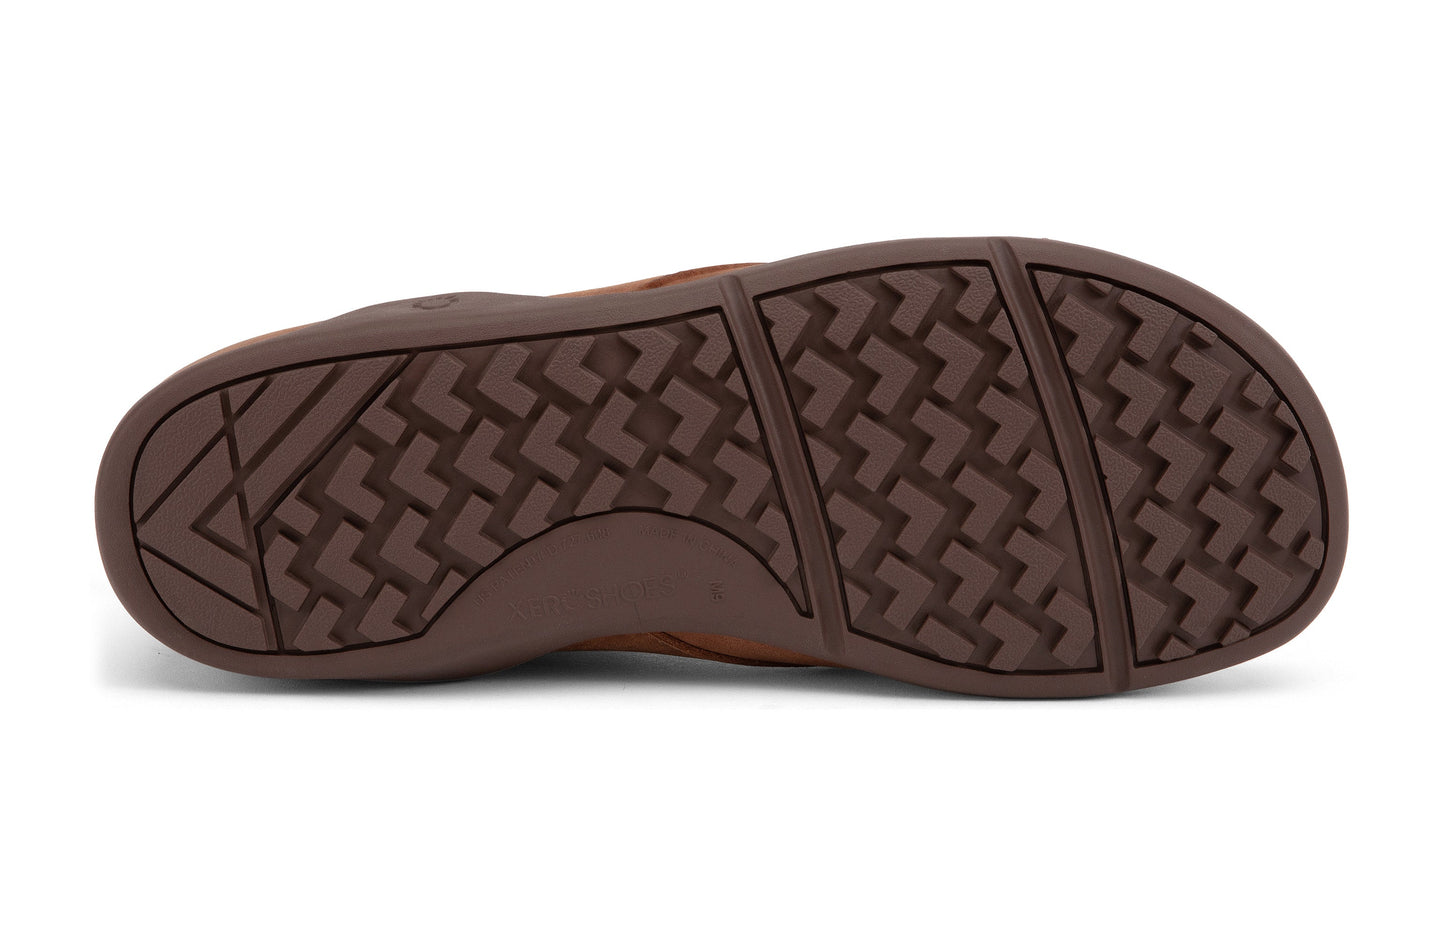 Xero Shoes Denver Leather barfods vinterstøvler til mænd i farven brown, saal